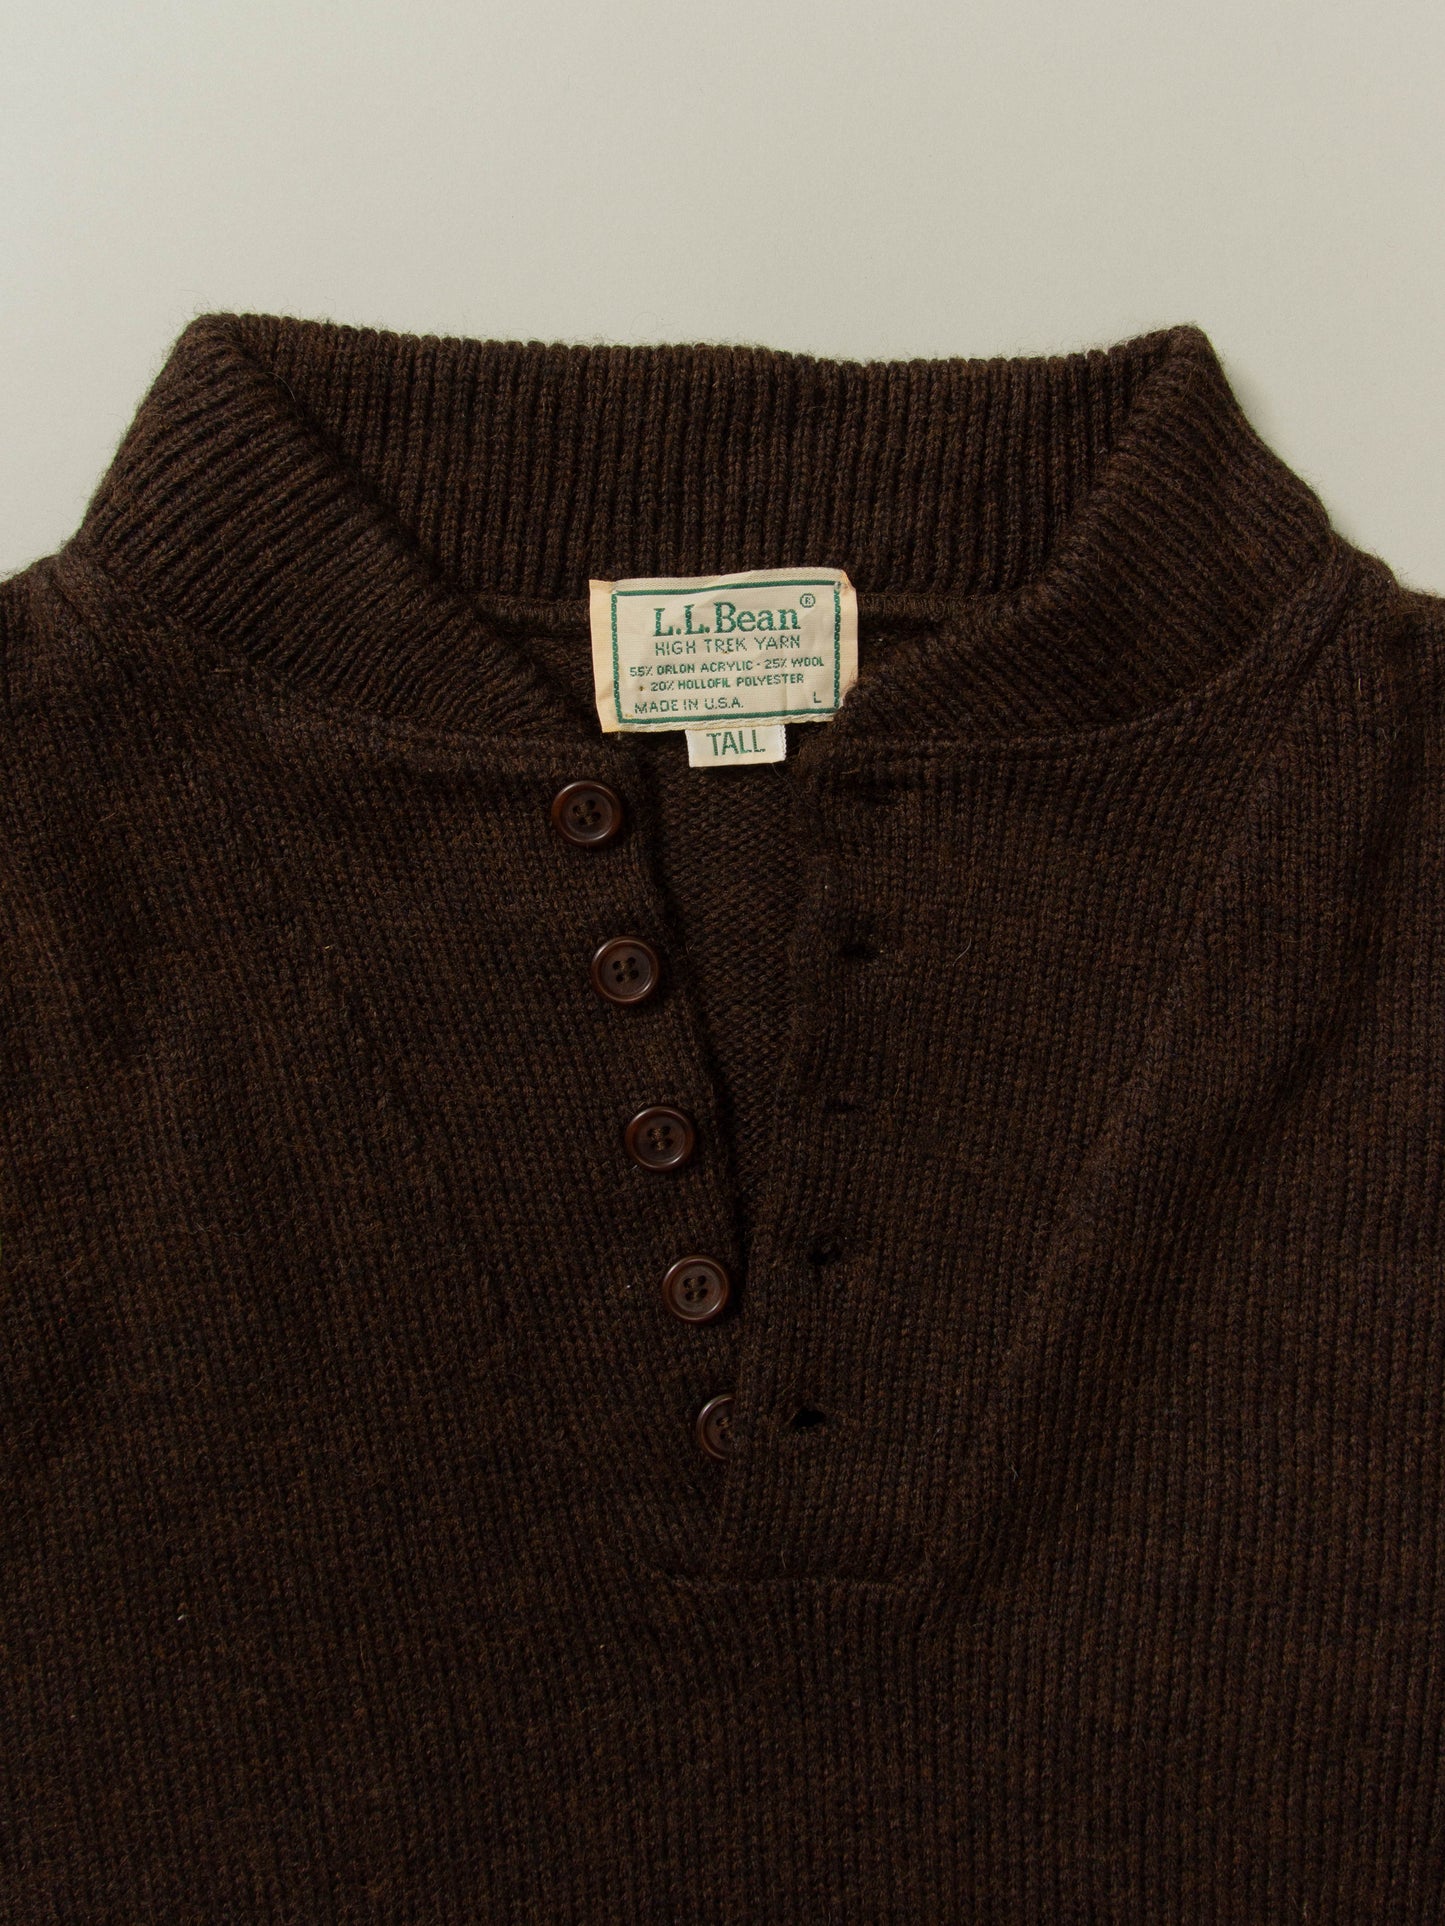 Vtg 1990s L.L. Bean Half Button Sweater - Made in USA (L)